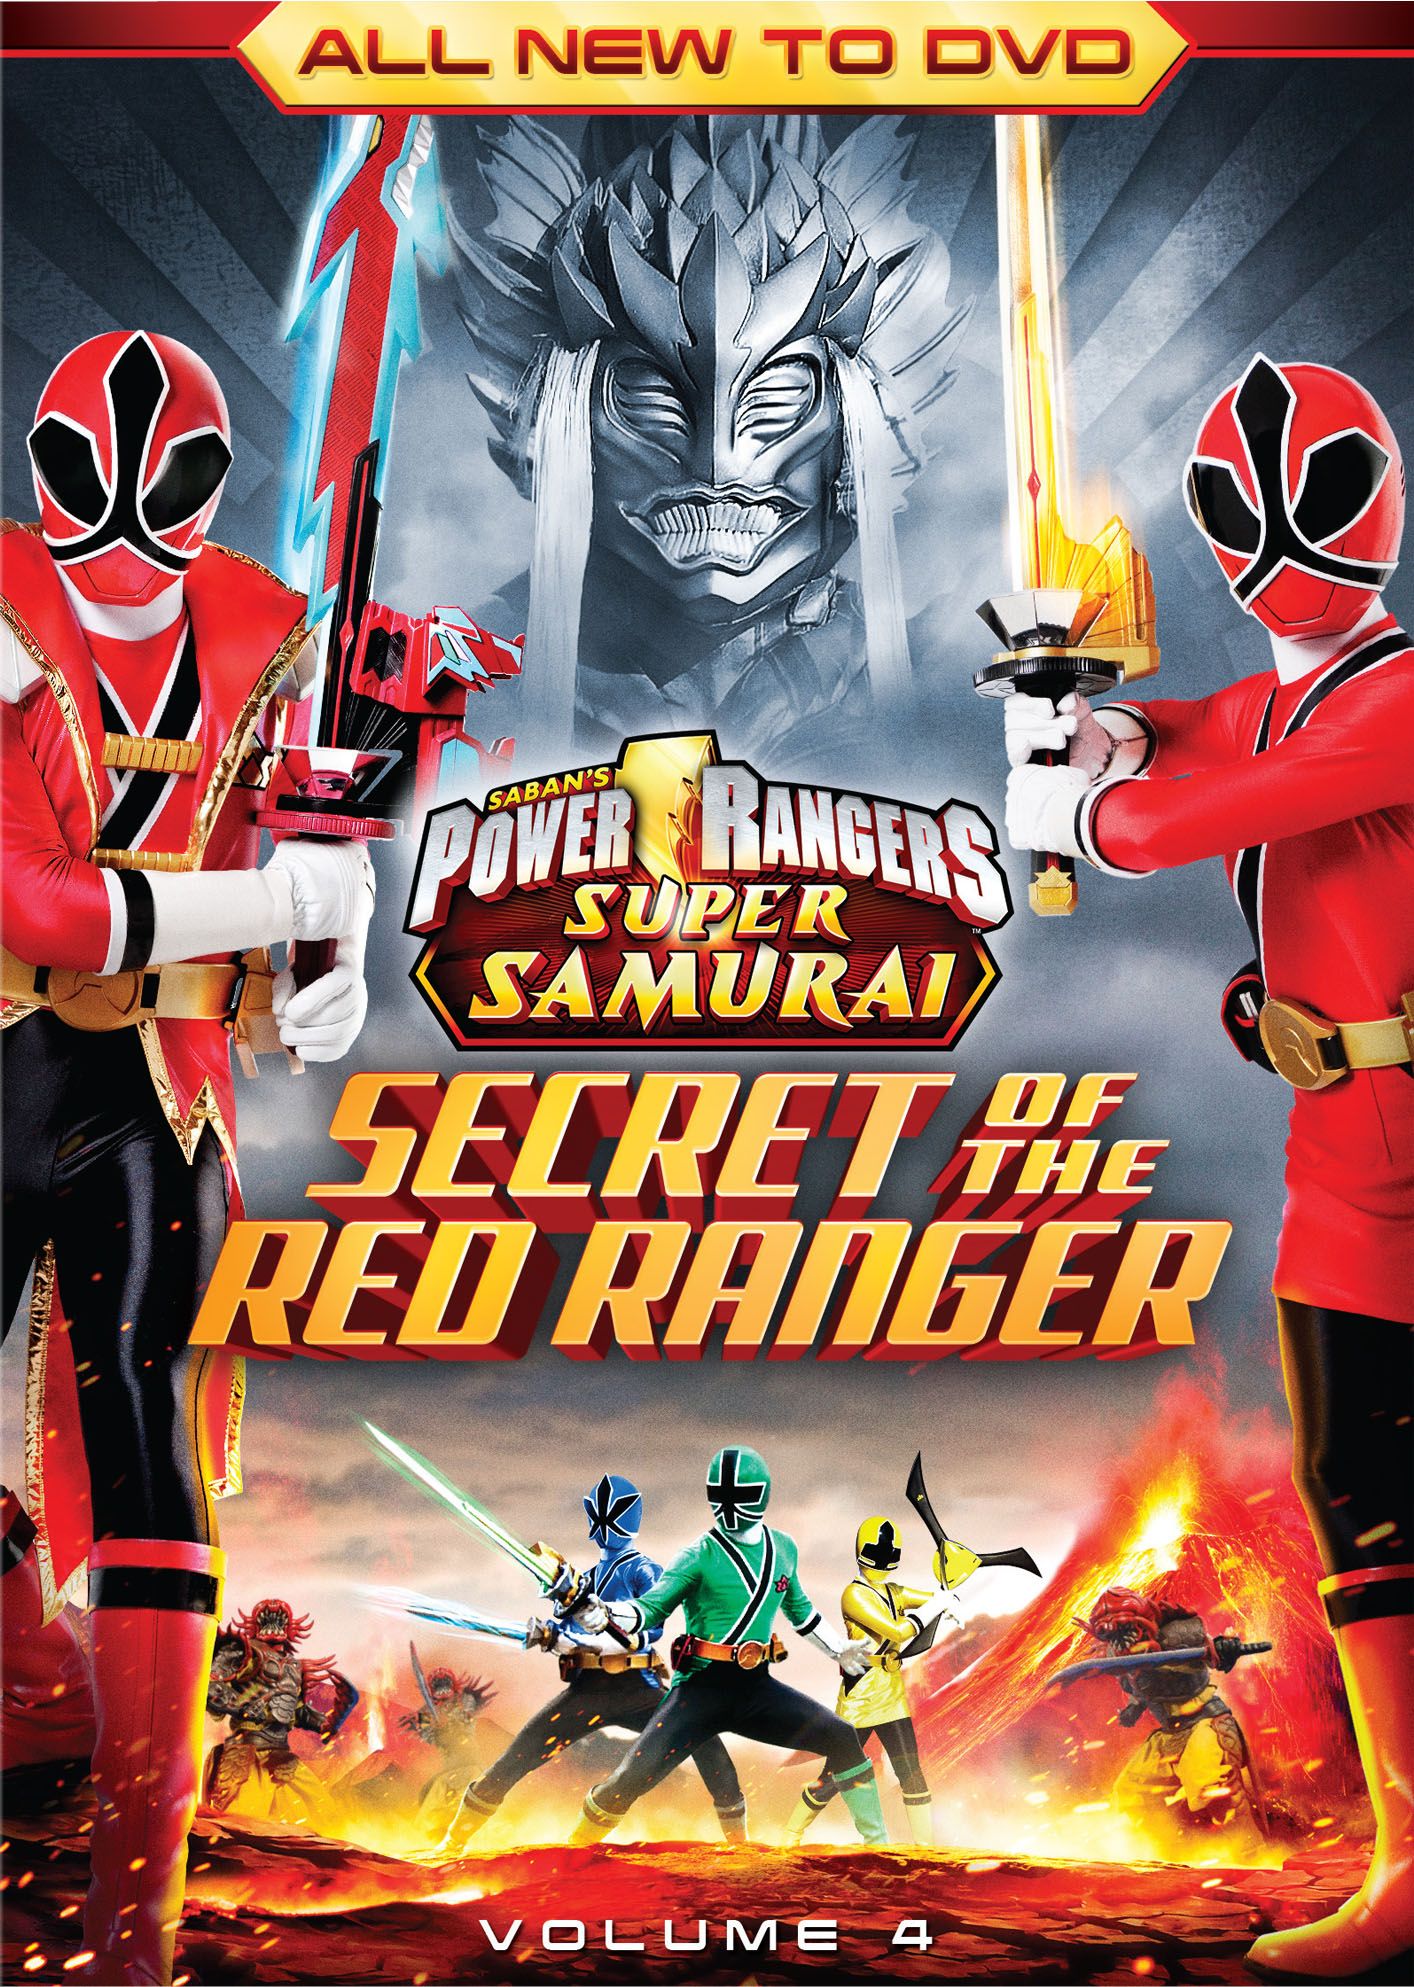 Power Rangers Super Samurai Vol 4 The Secret Of The Red Ranger [dvd] Best Buy